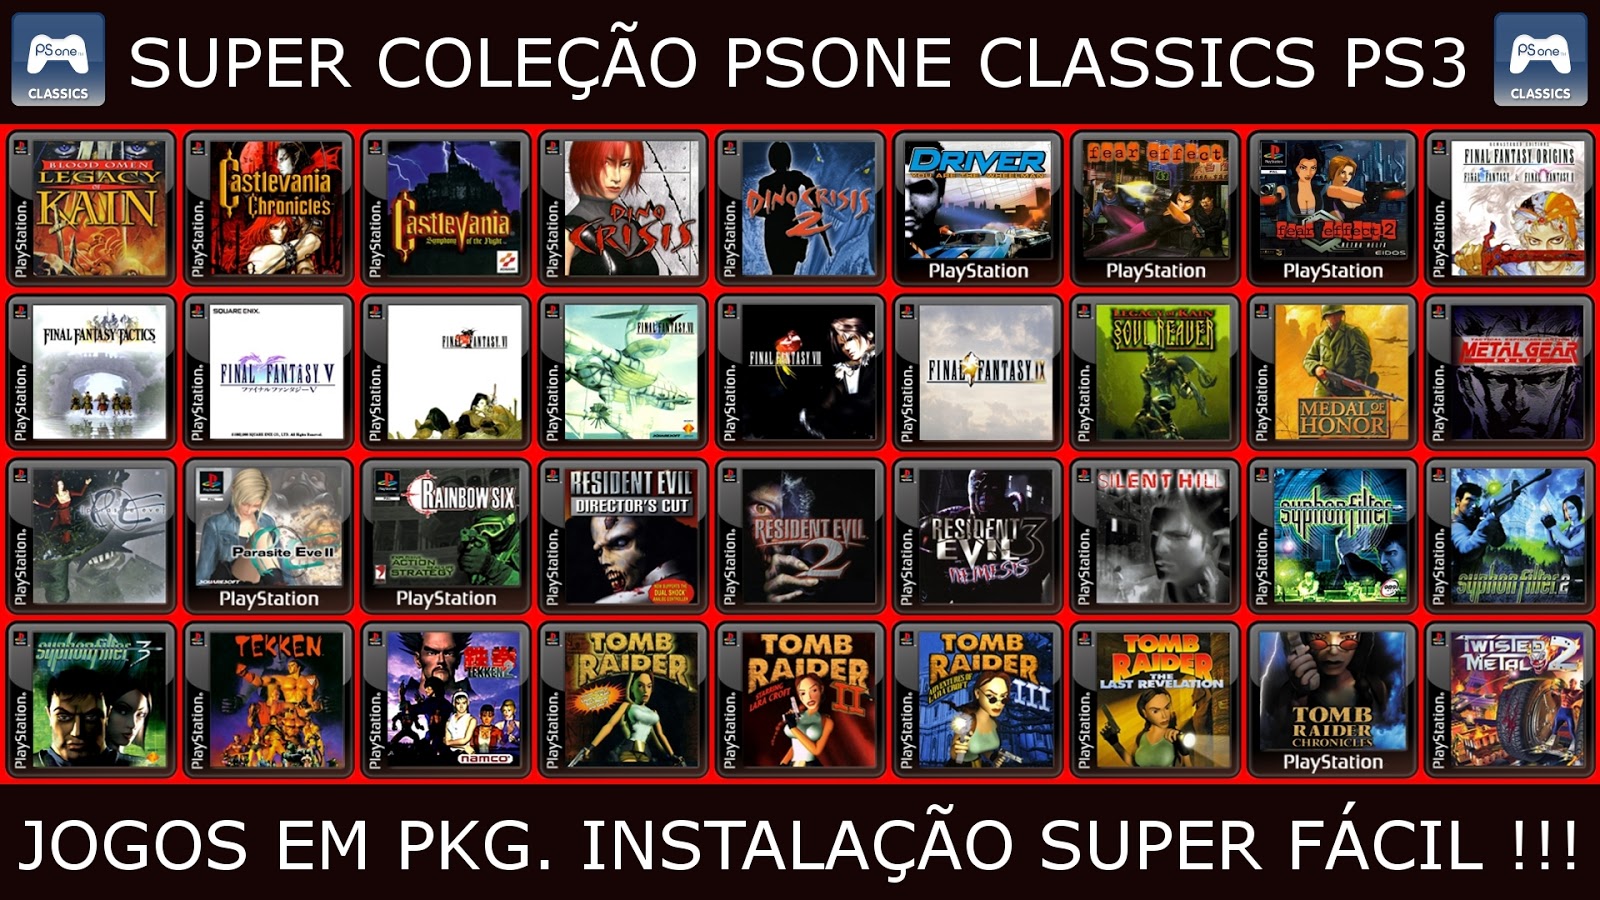 GODDY GAMES: SUPER COLEÇÃO PSONE CLASSICS - PS3. 167 JOGOS EM PKG.  INSTALAÇÃO FÁCIL e RÁPIDA !!!